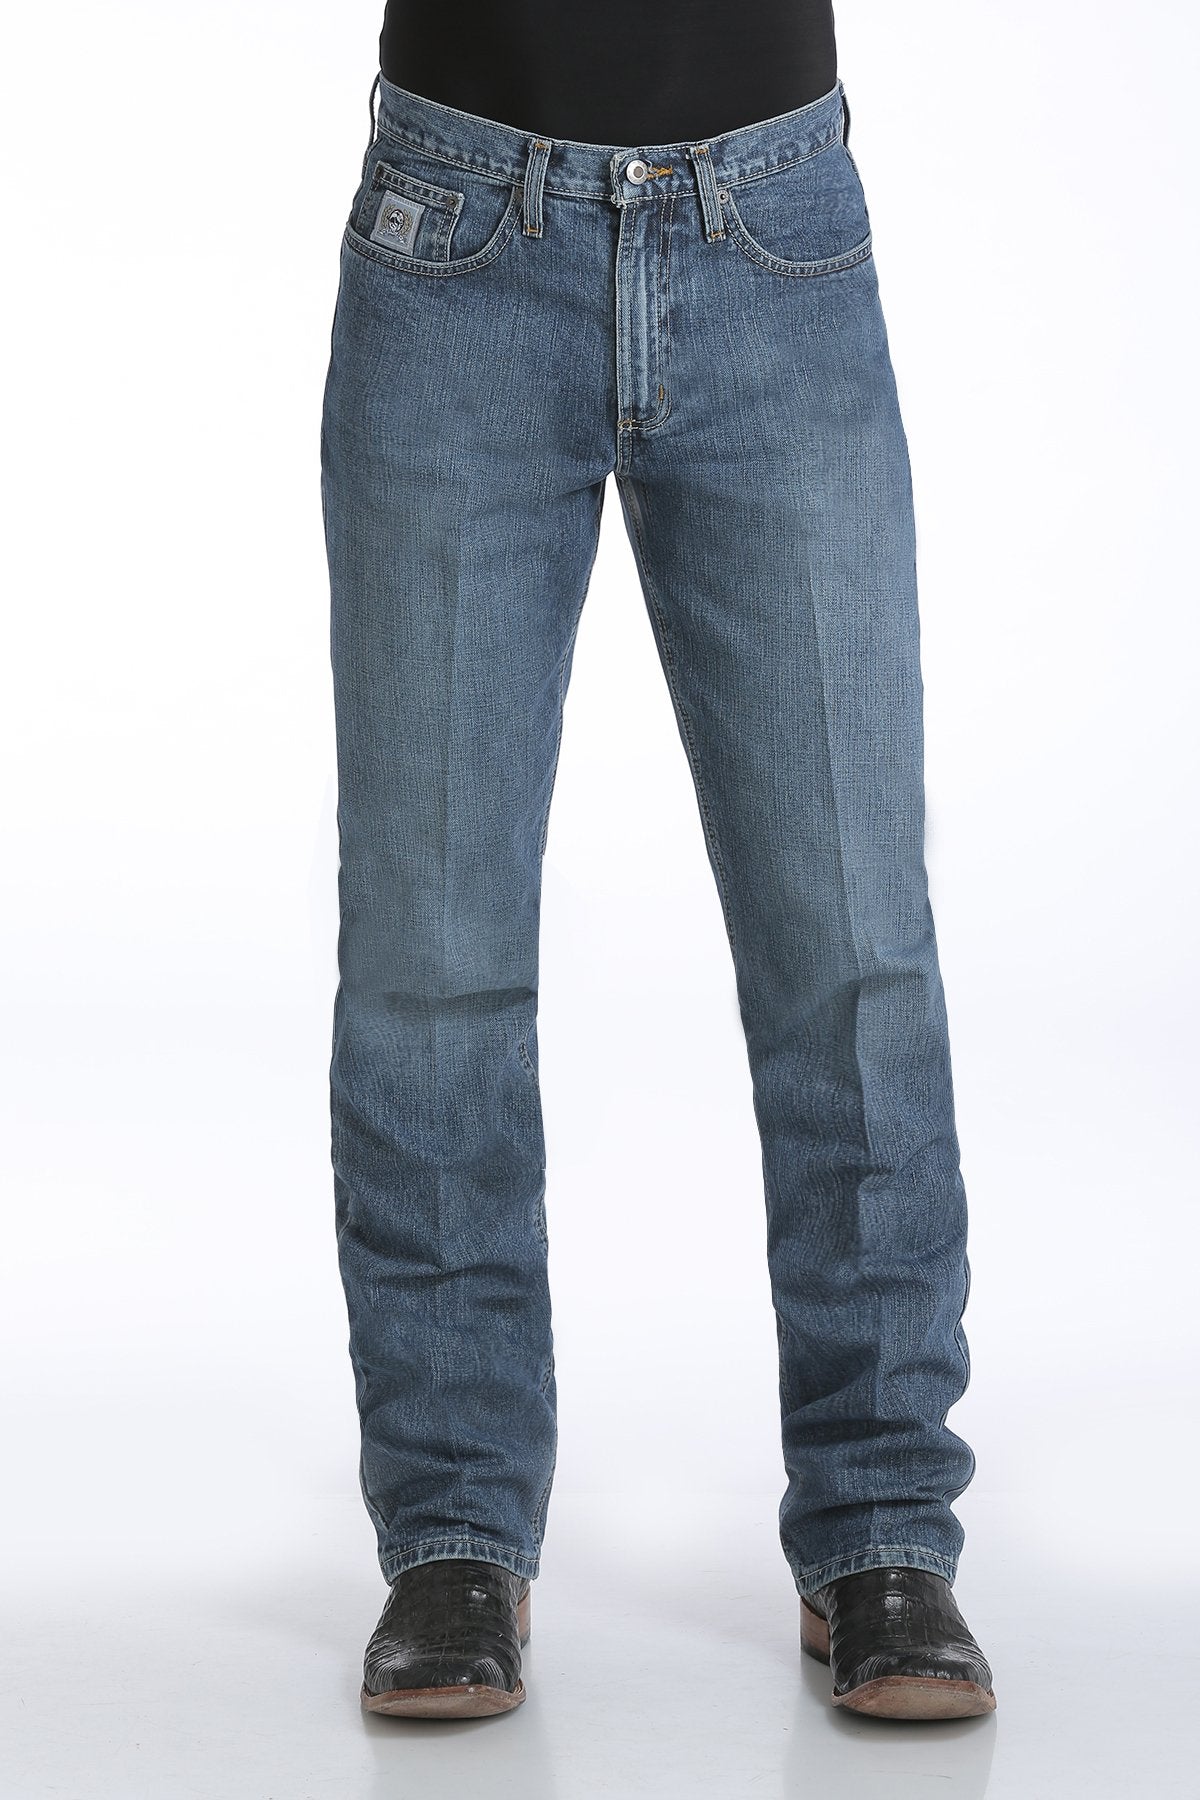 Cinch Mens Silver Label Slim Fit Jeans 34 Inch Leg (Medium Stonewash)